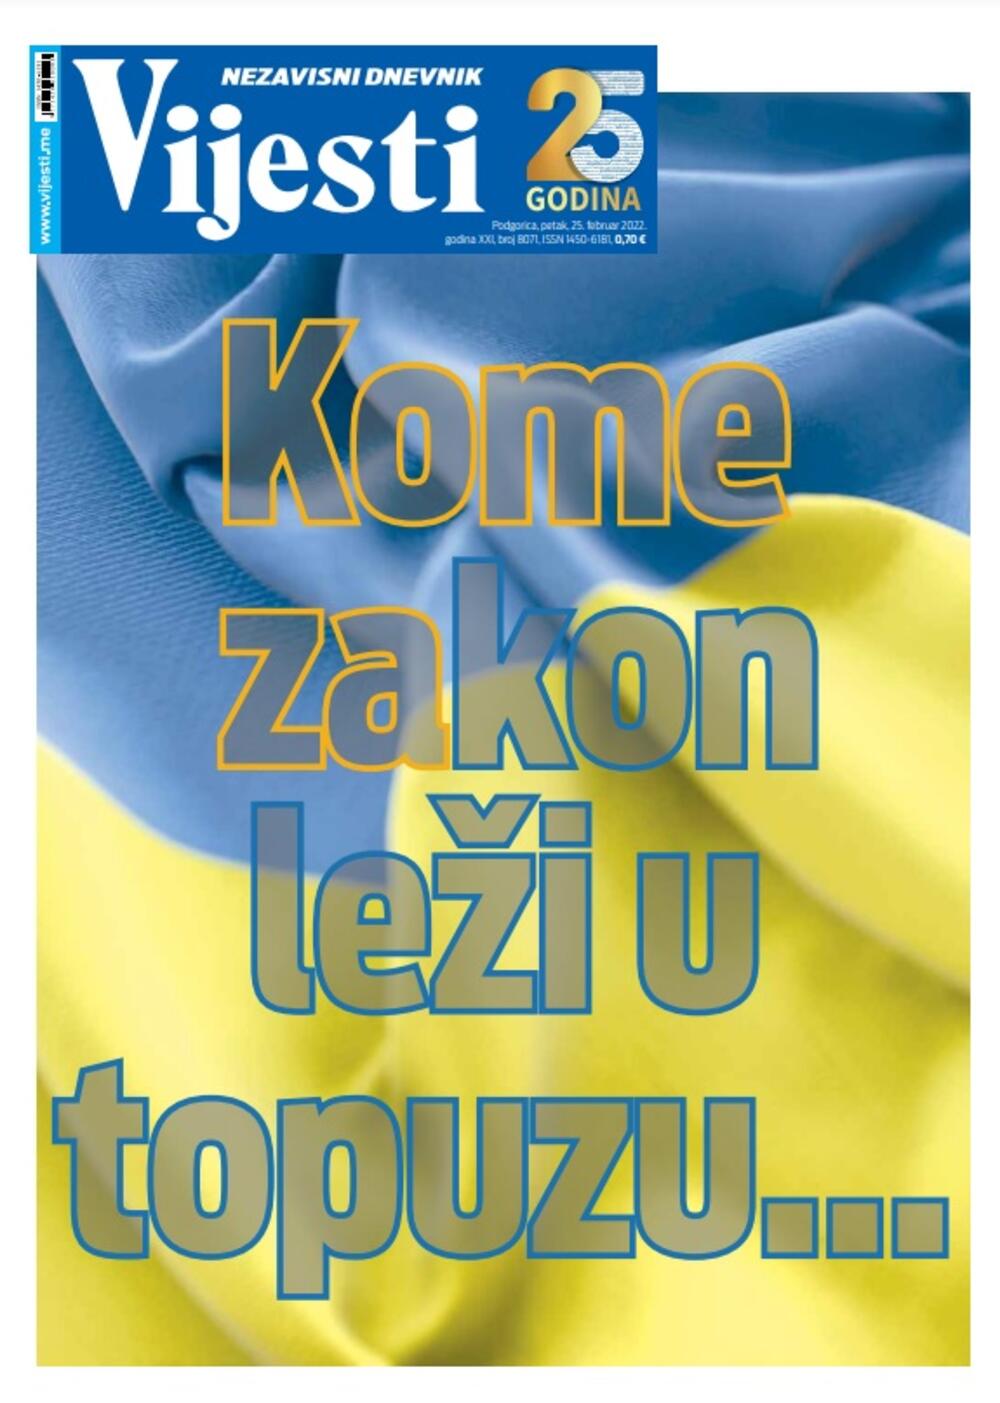 Naslovna strana "Vijesti" za 25. februar 2022., Foto: Vijesti